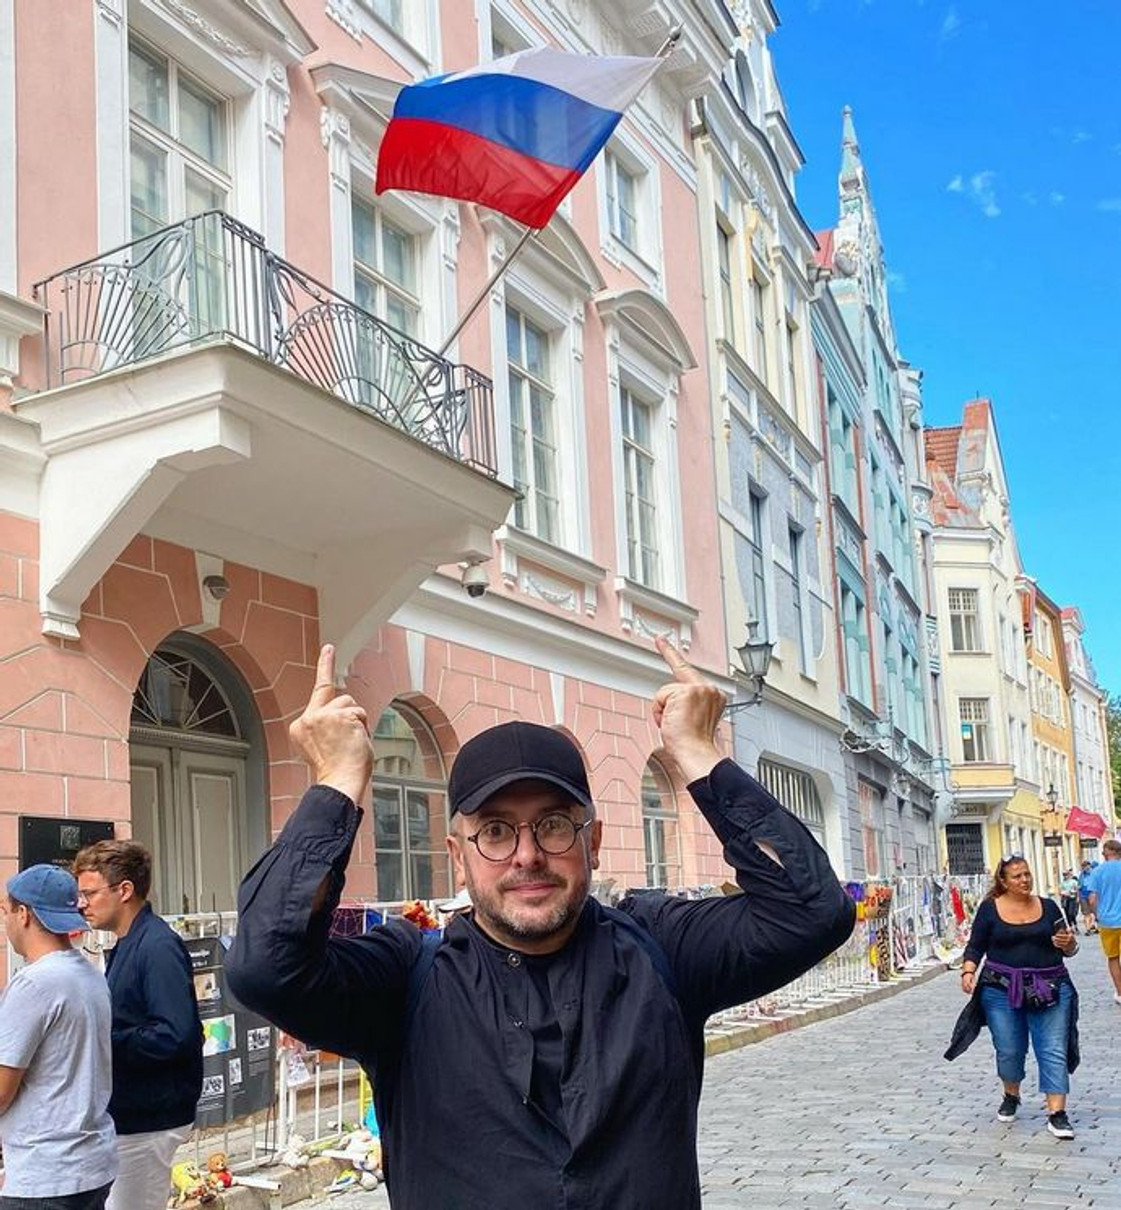 Здорова реакція на російський триколор, каже Олексій Суханов. Він вважає себе українцем і націоналістом